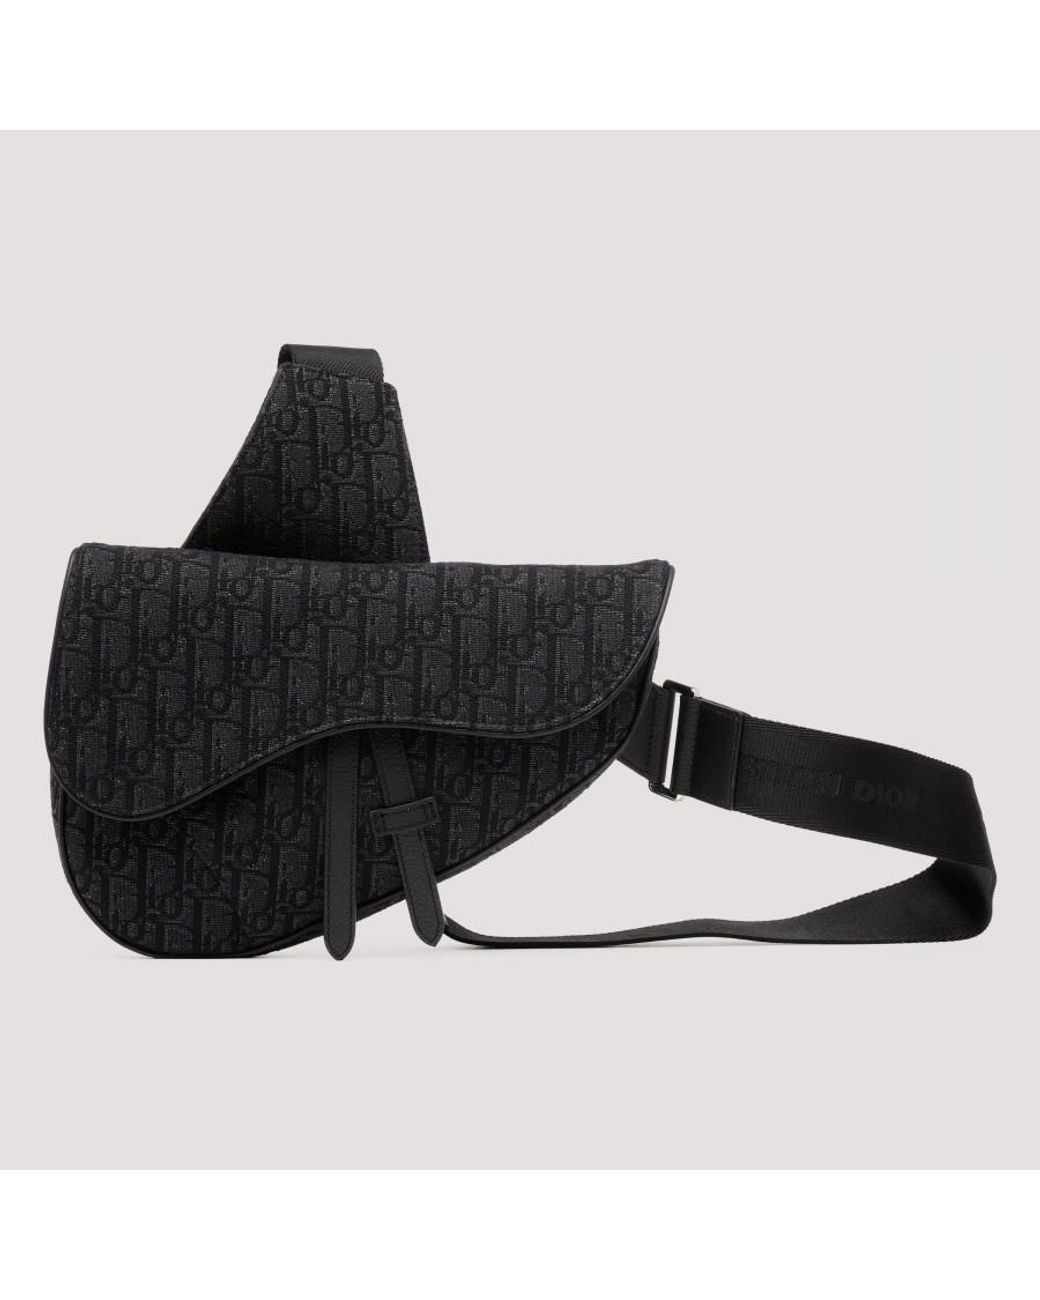 UhfmrShops  calf leather strapped clutch bag  Dior Saddle Shoulder bag  394737